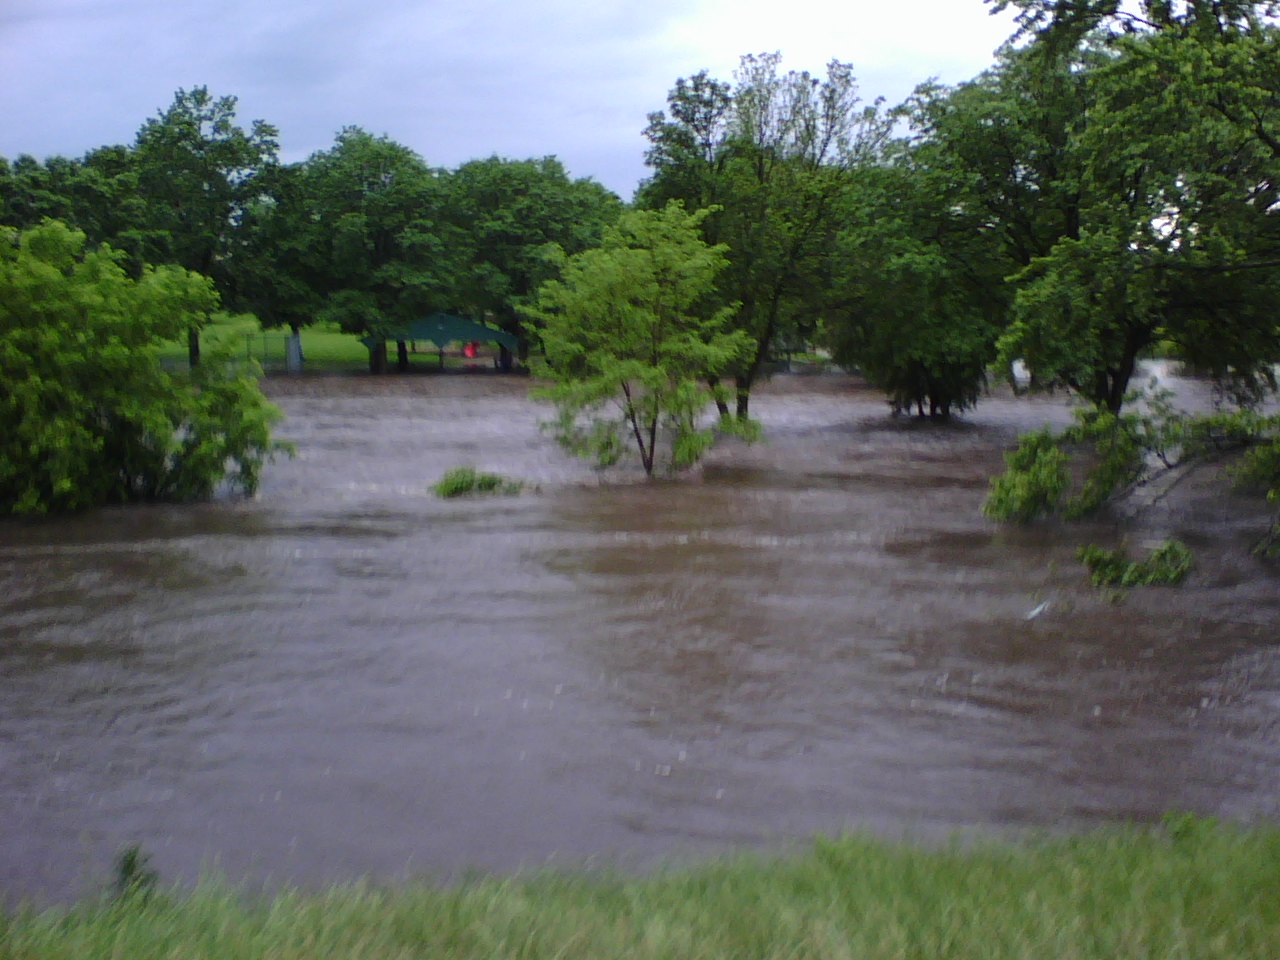 Iowa Flood of 2008